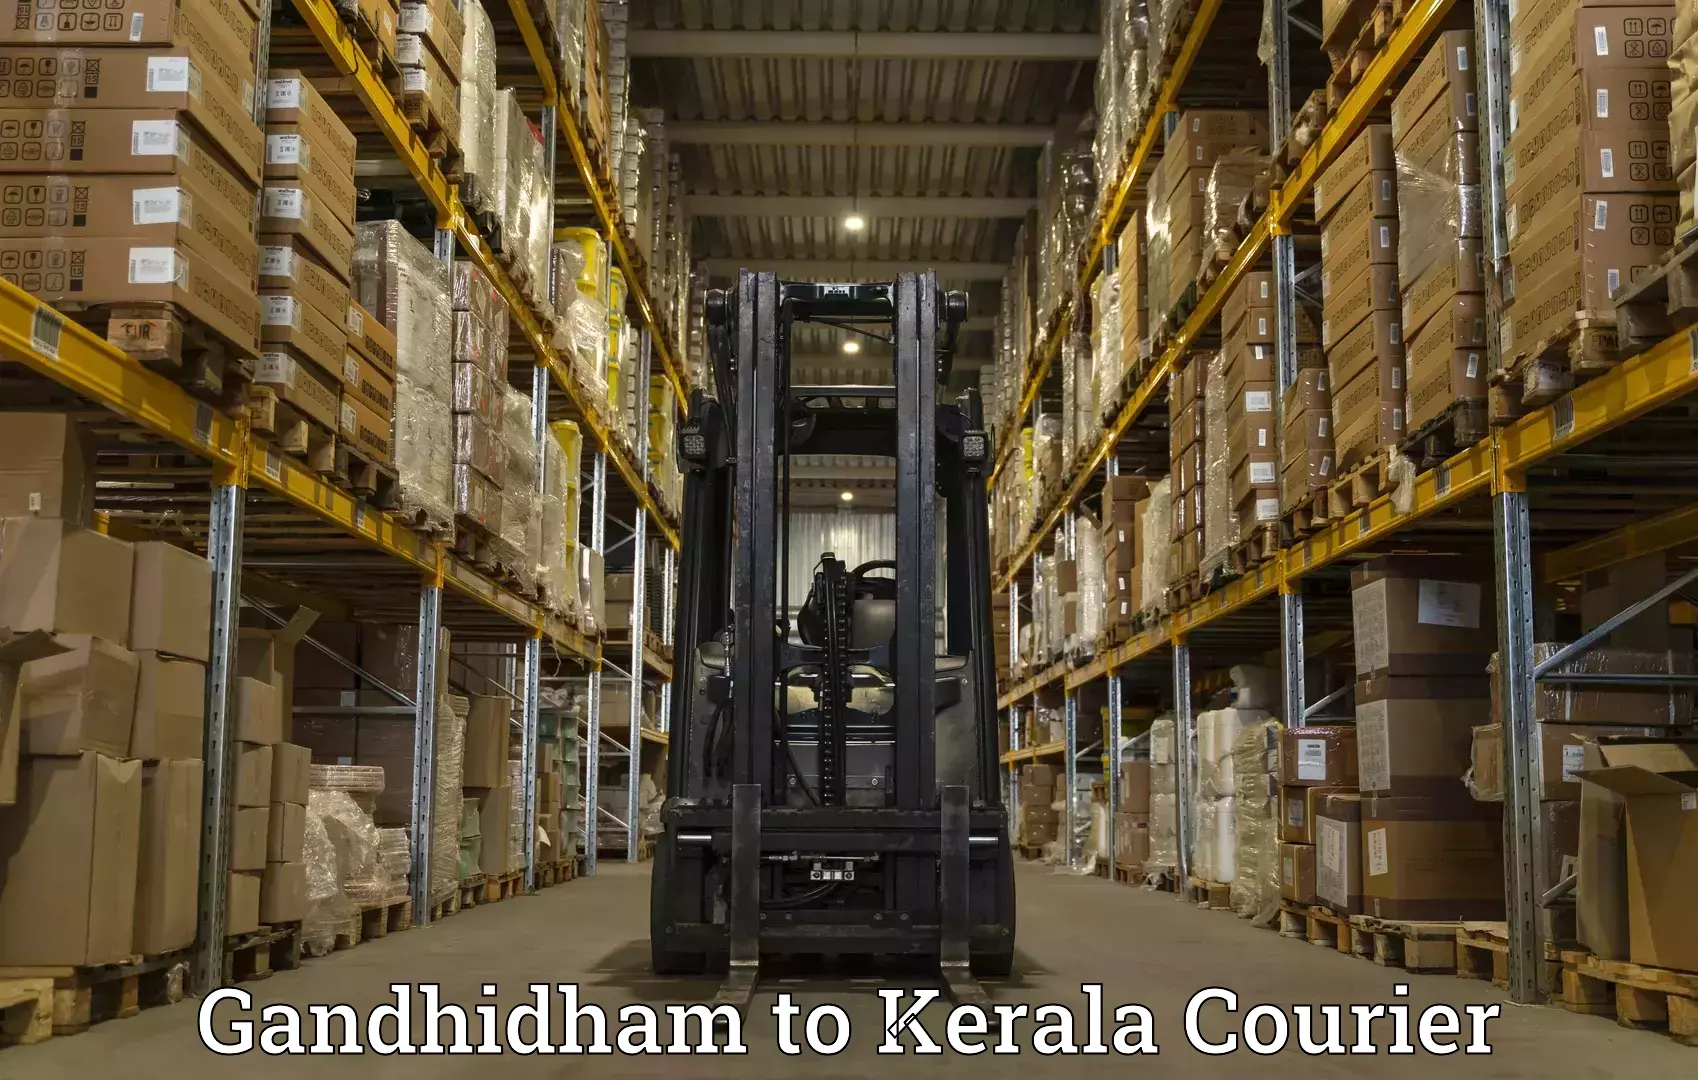 High-speed parcel service Gandhidham to Nochad